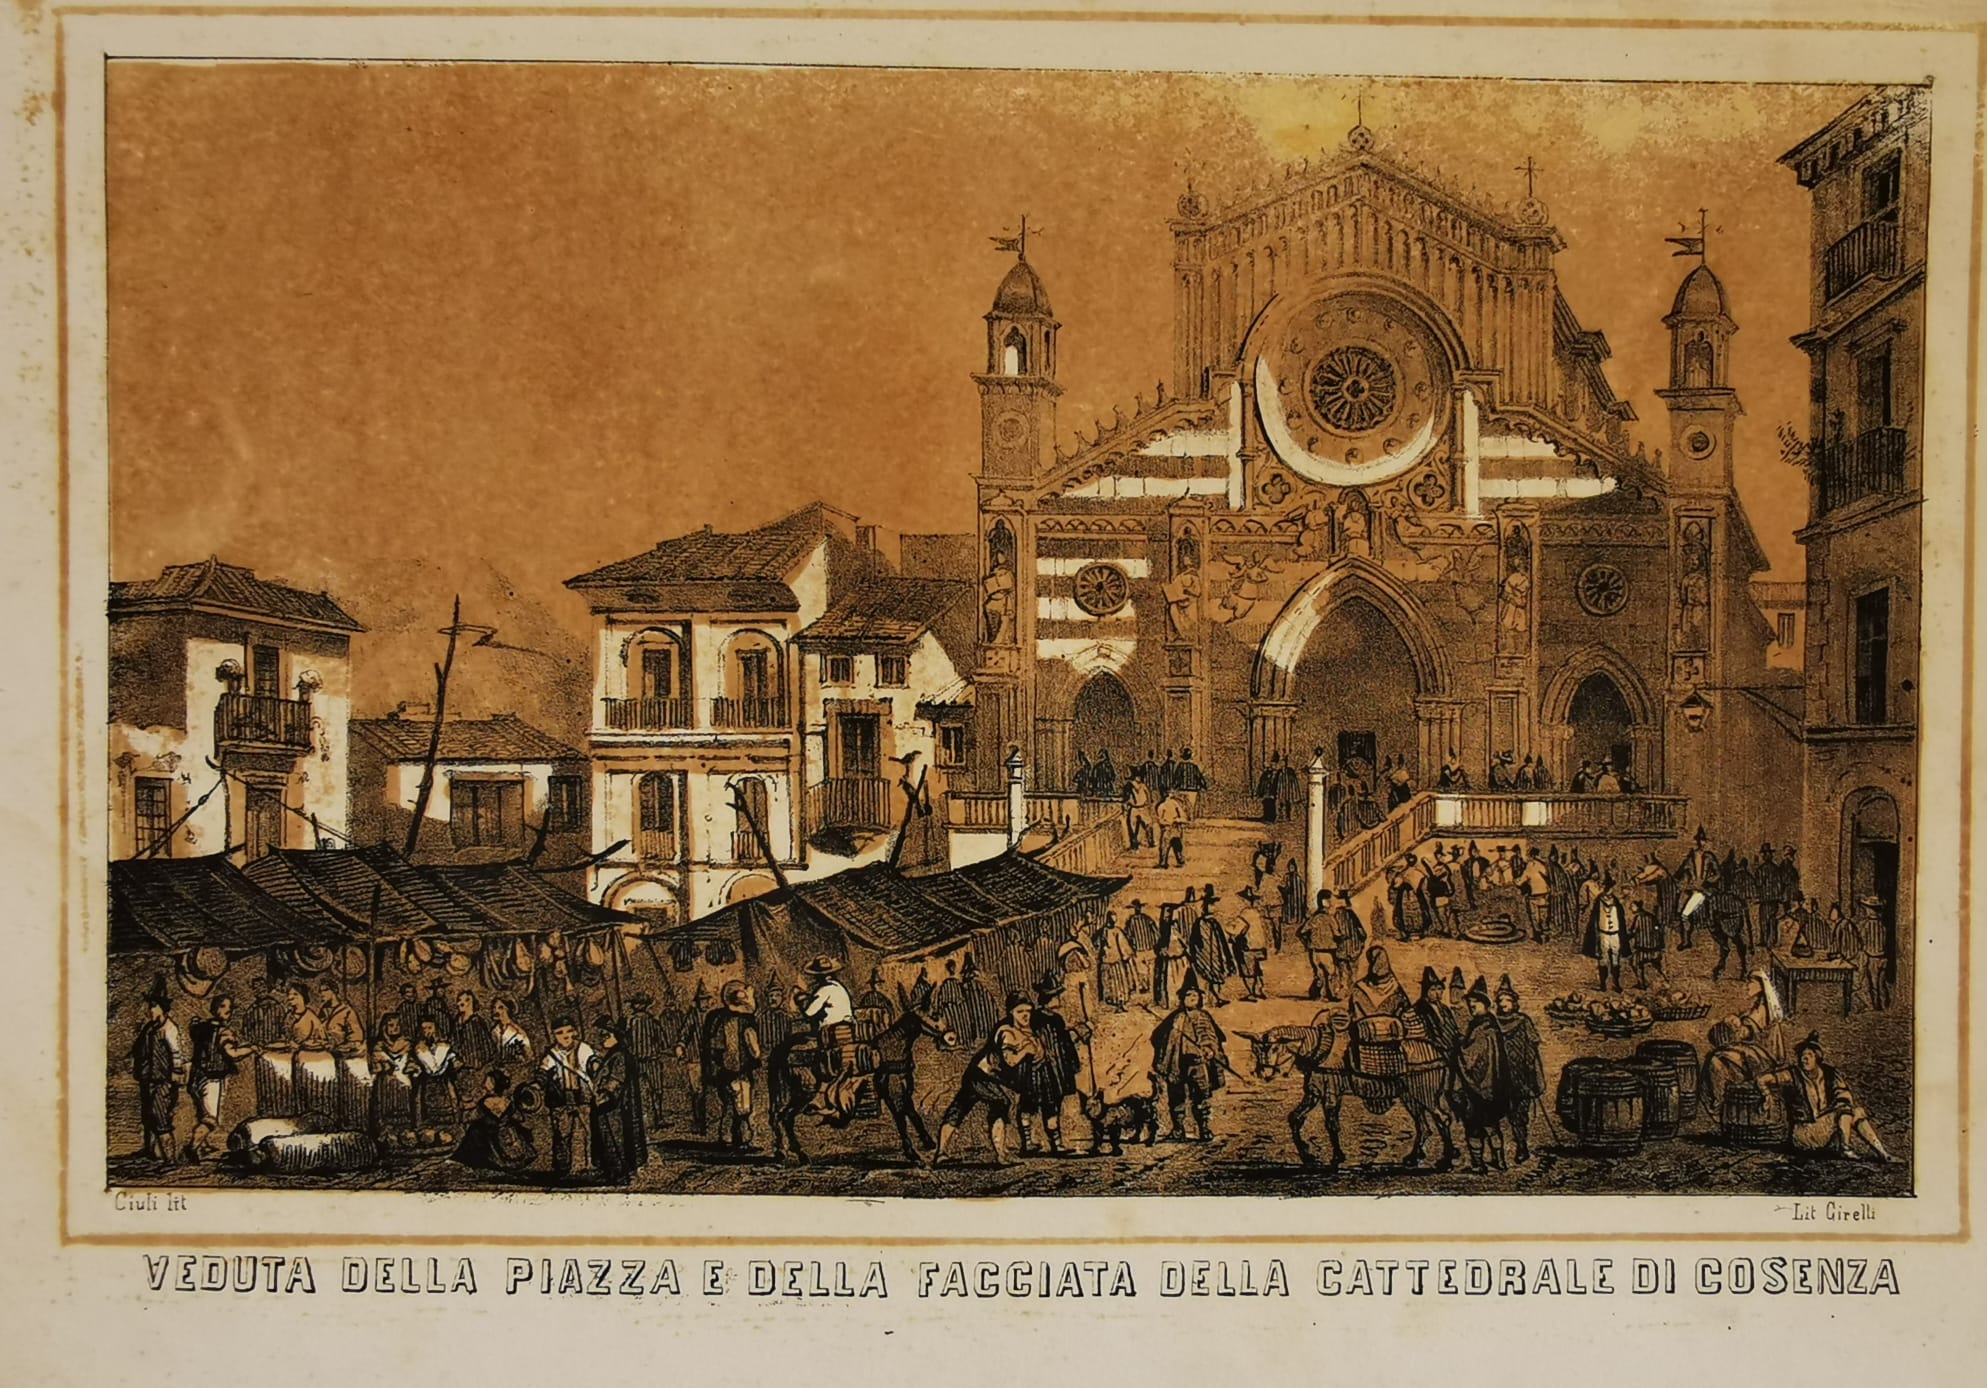 Veduta della piazza e della facciata della Cattedrale di Cosenza